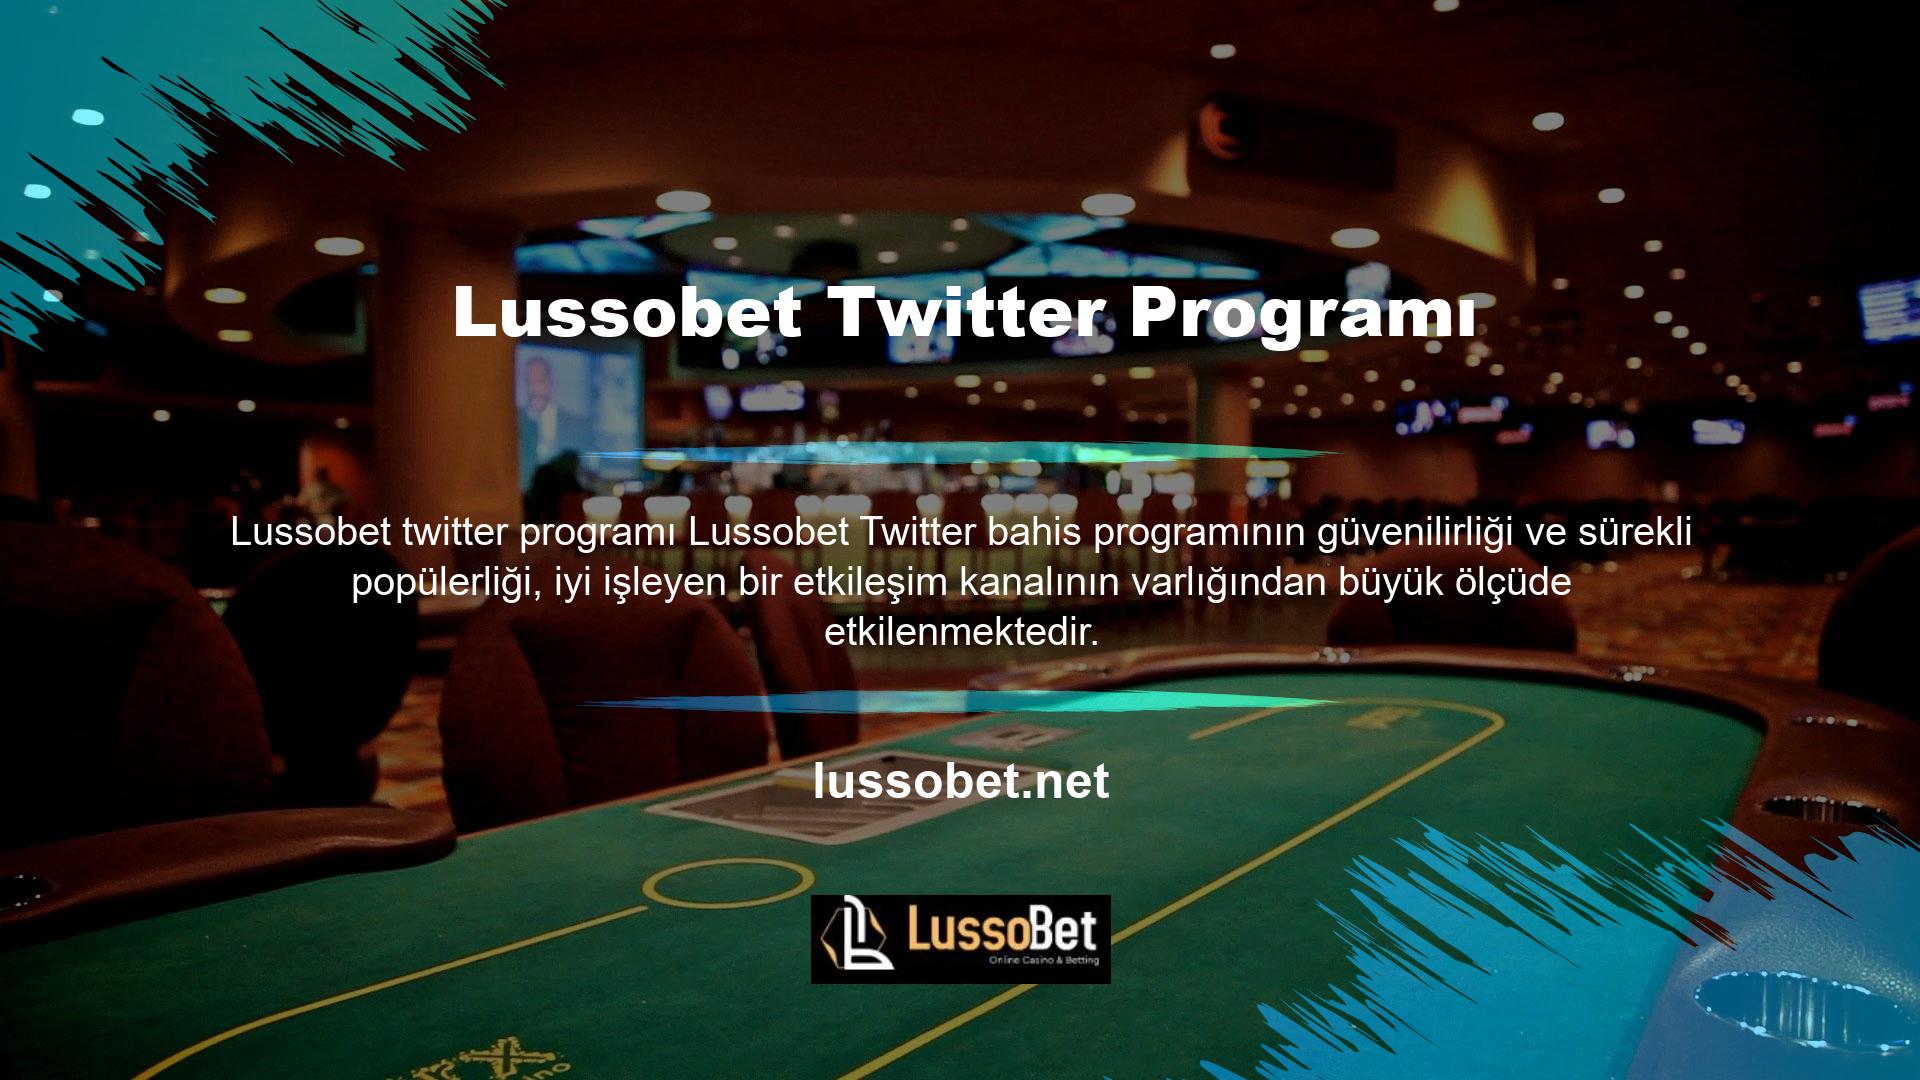 Bazen Lussobet, Twitter bahisleri için canlı destek sağlayabilir